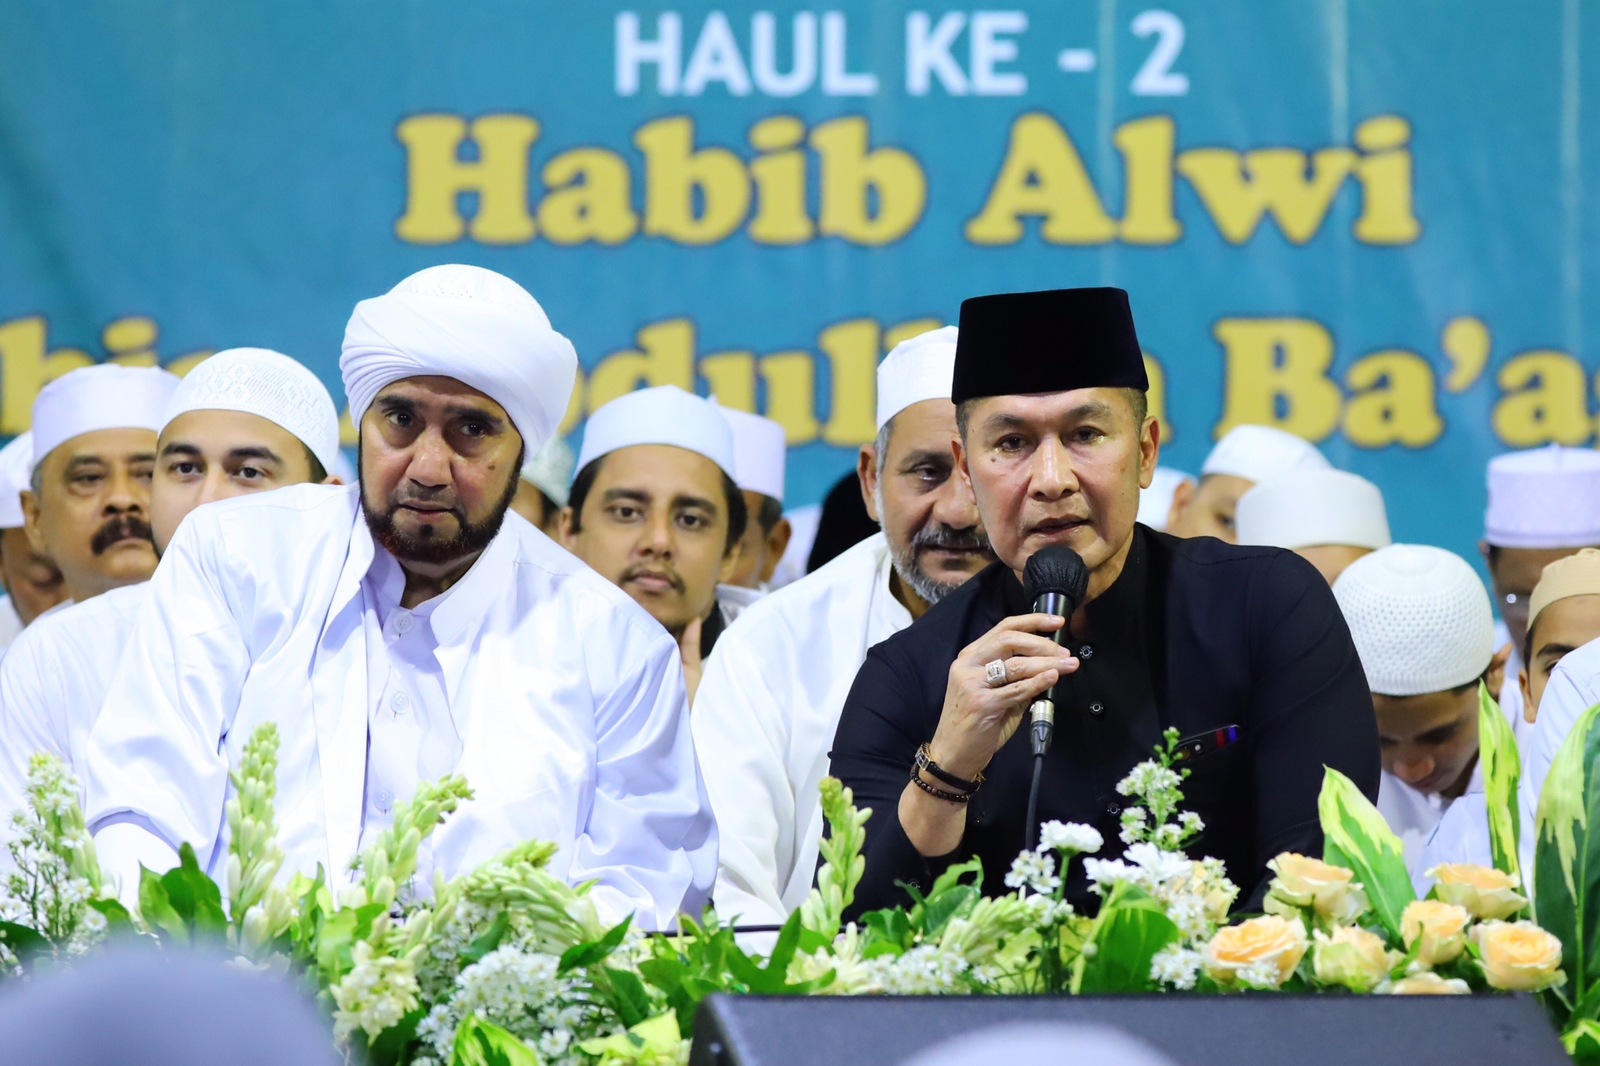 Haul ke-2 Habib Alwi bin Abdullah Ba'agil, Bupati Hartopo : Semoga Selawat Membawa Keberkahan bagi Kudus